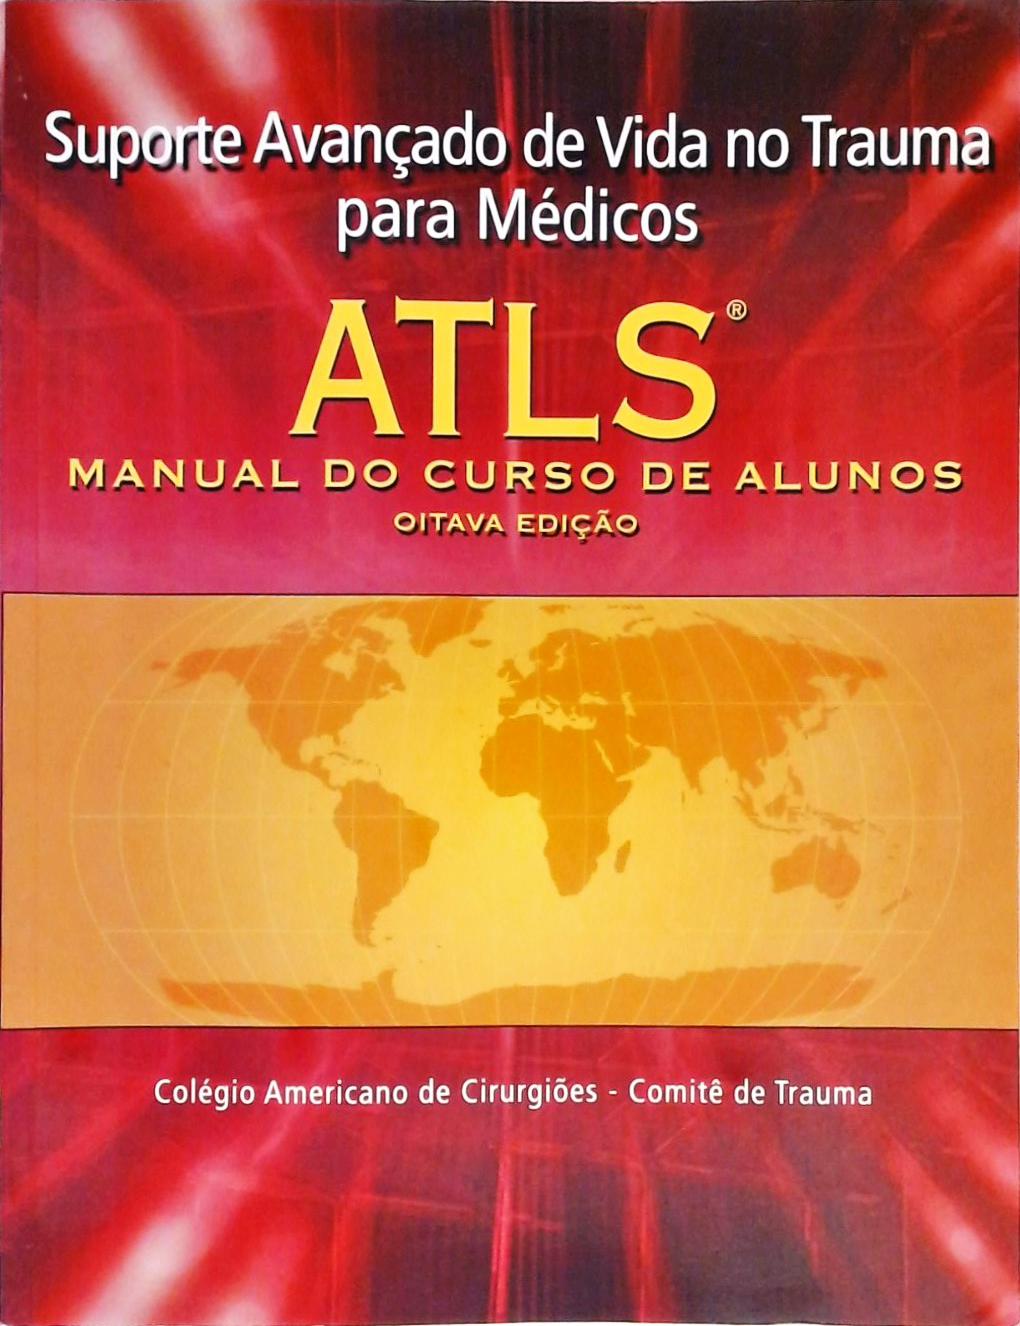 ATLS - Suporte Avançado de Vida no Trauma Para Médicos